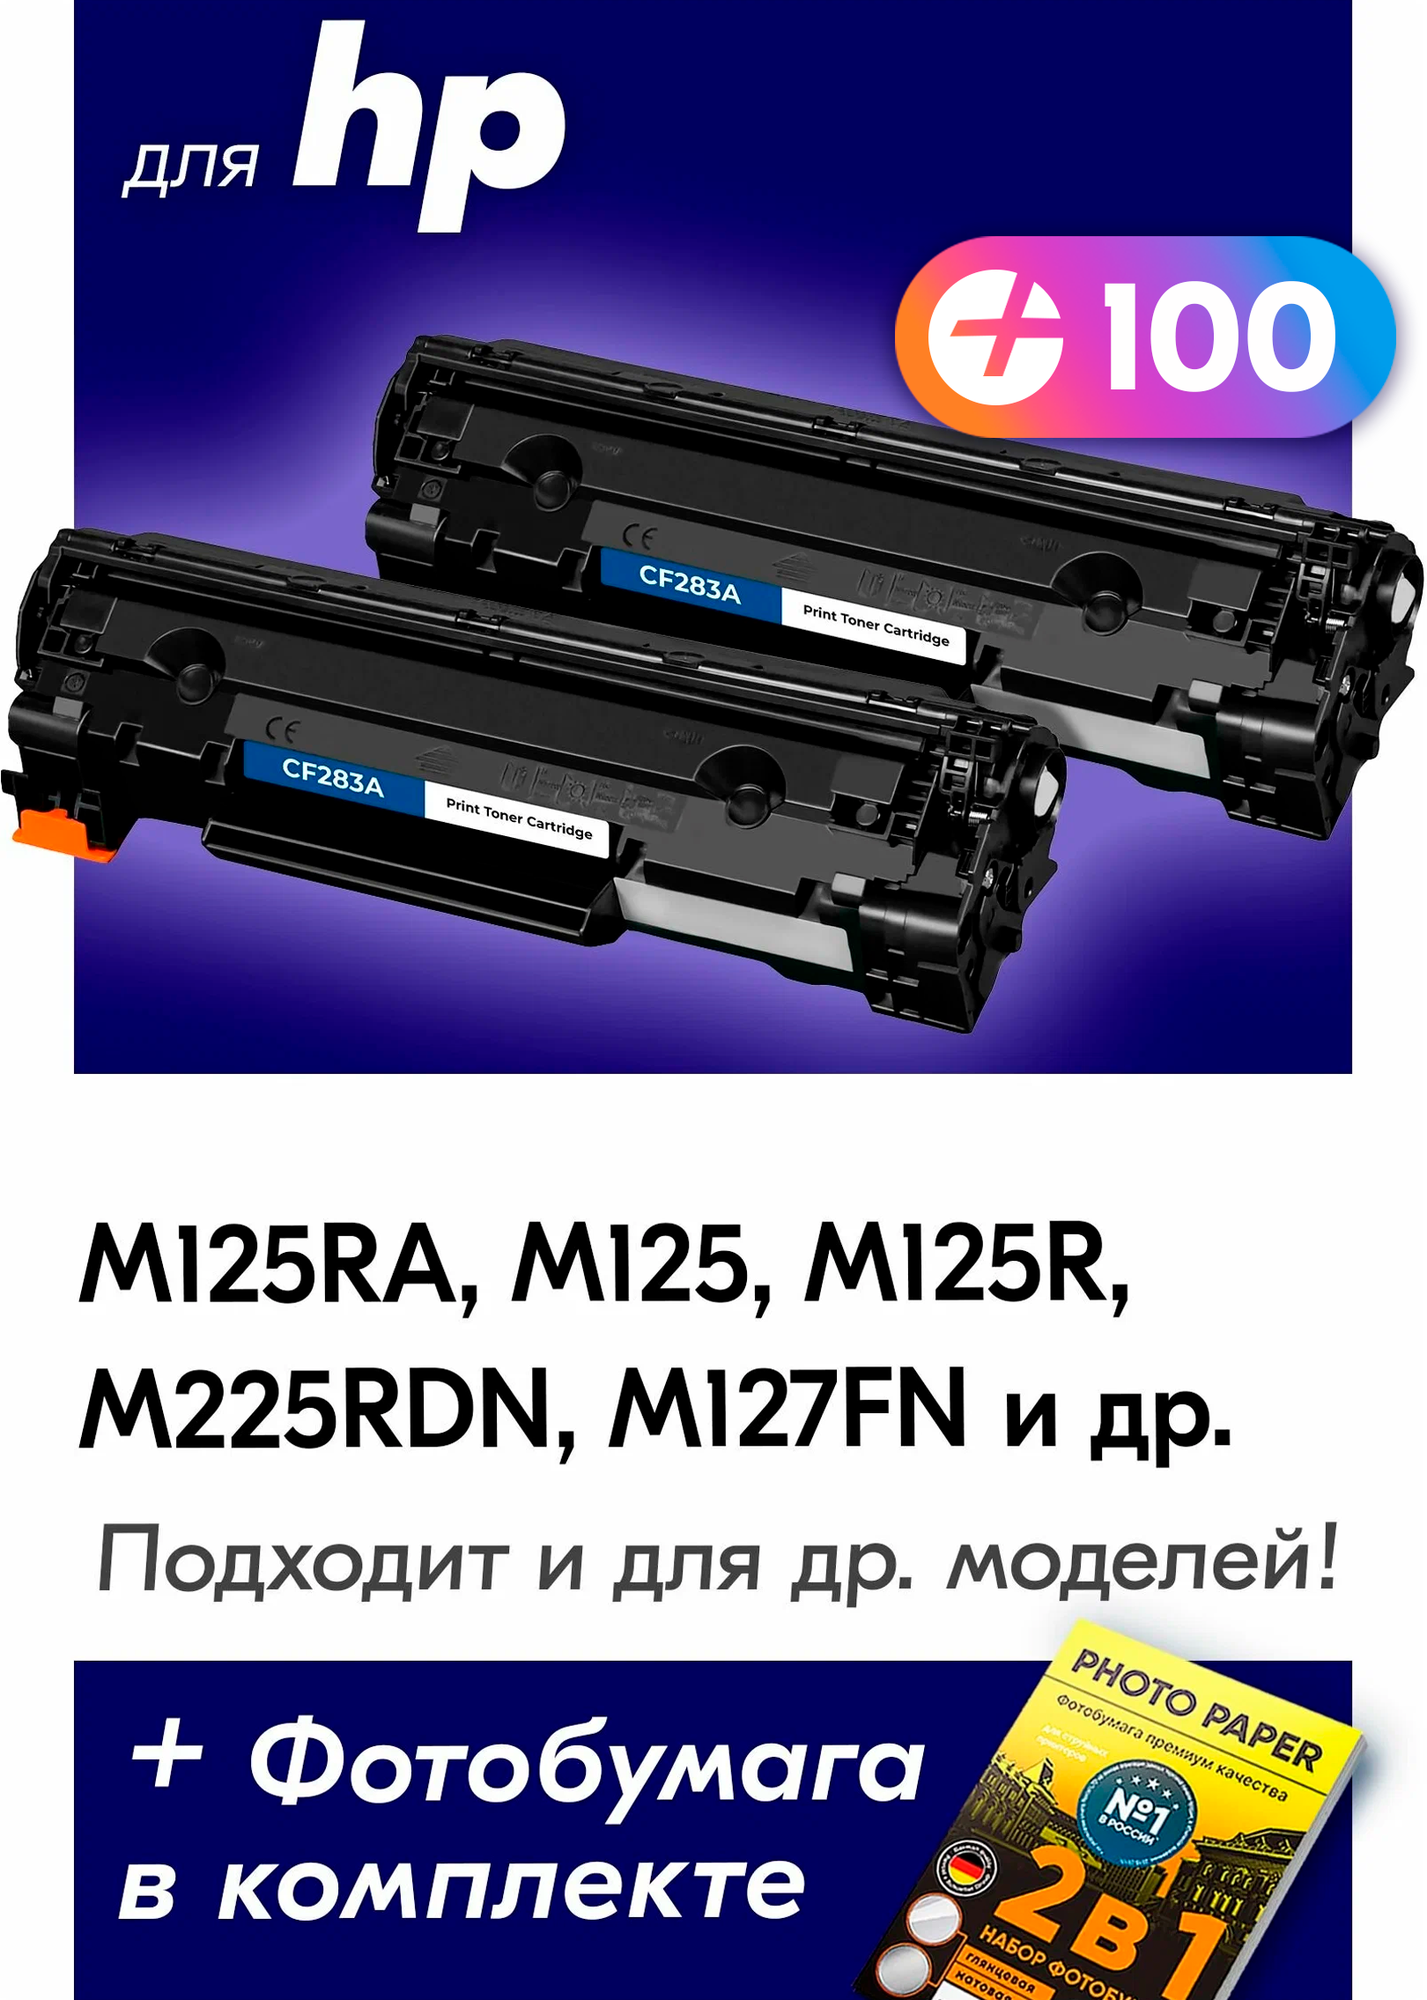 Лазерные картриджи для CF283A (№ 83A), HP LaserJet M125RA, M125, M125R, M225RDN, M127FN и др. с краской черные новые заправляемые, 3000 копий